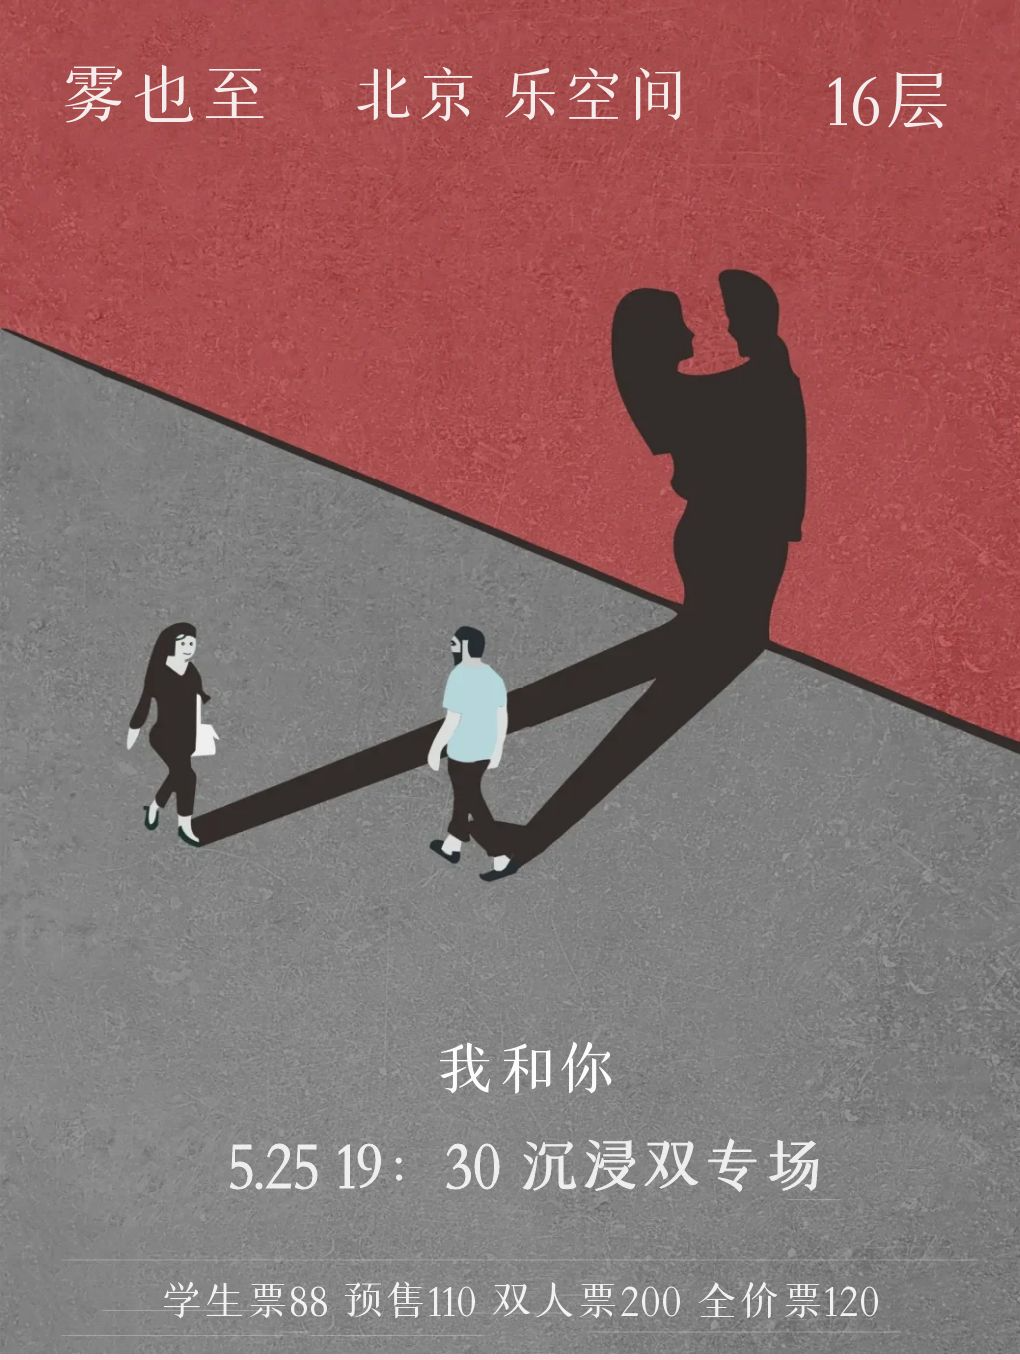 【北京】“我和你 雾也到达世界” 舞台2024 颜值实力演唱会-北京站